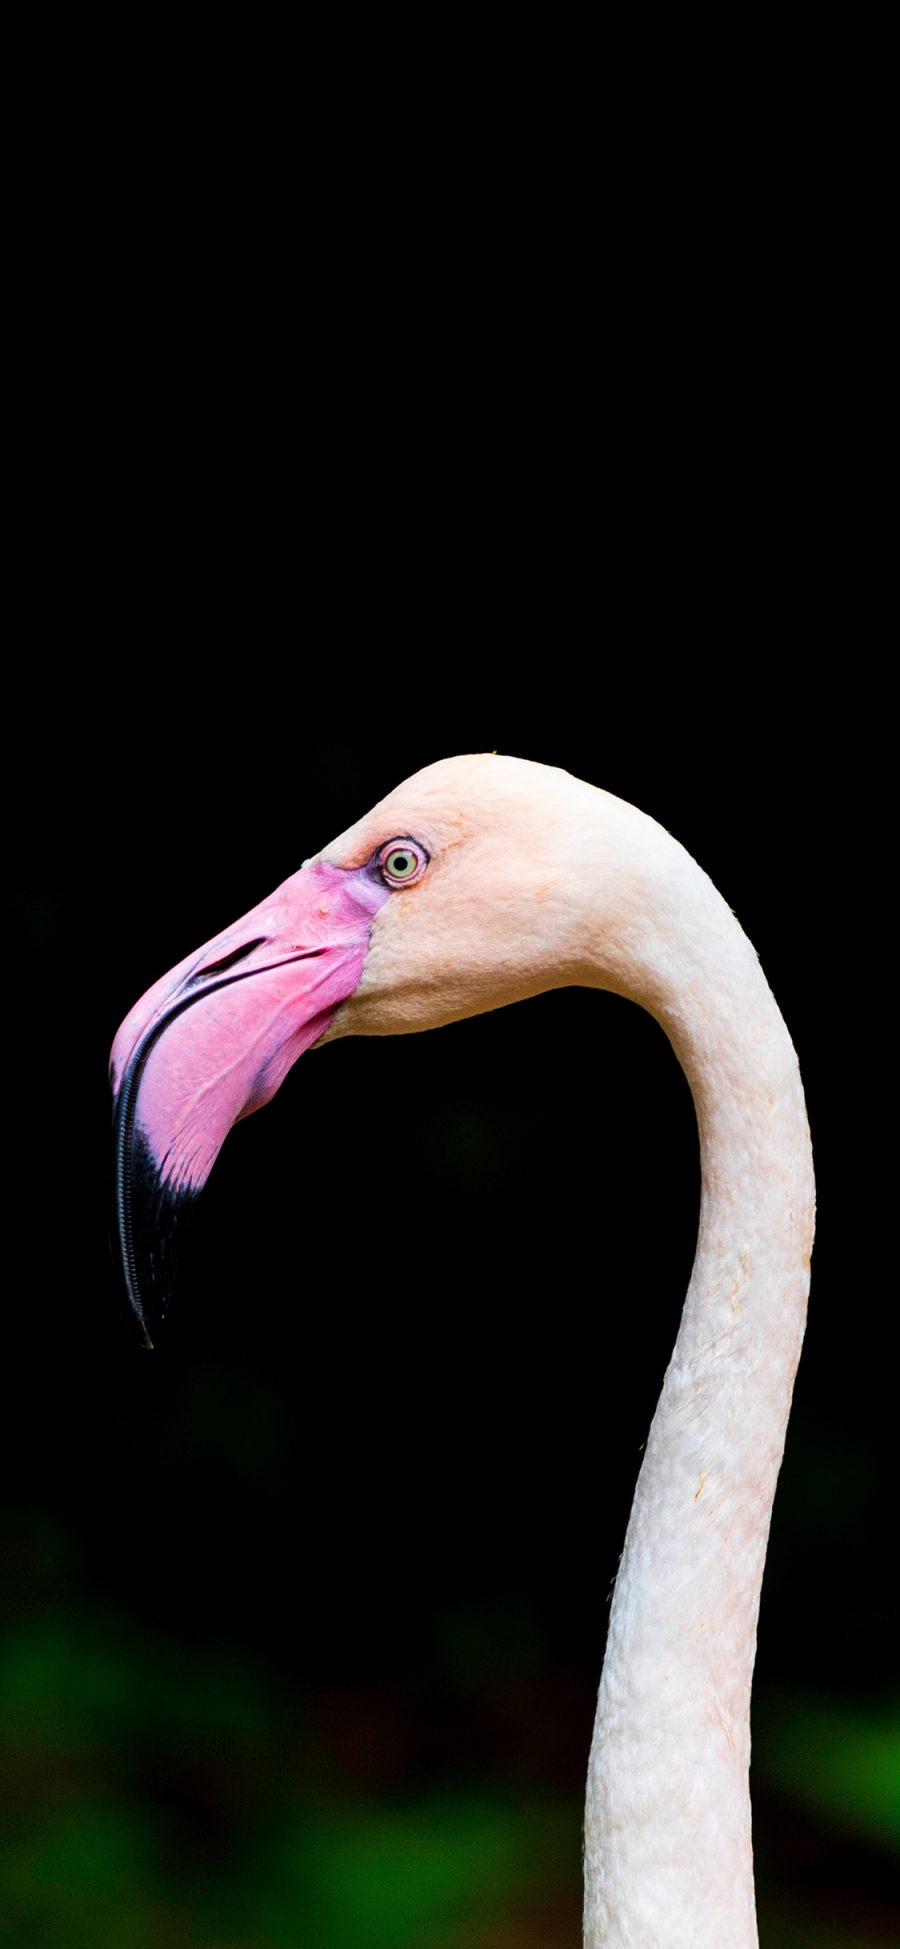 [2436×1125]飞禽 火烈鸟 保护动物 粉色嘴 苹果手机壁纸图片